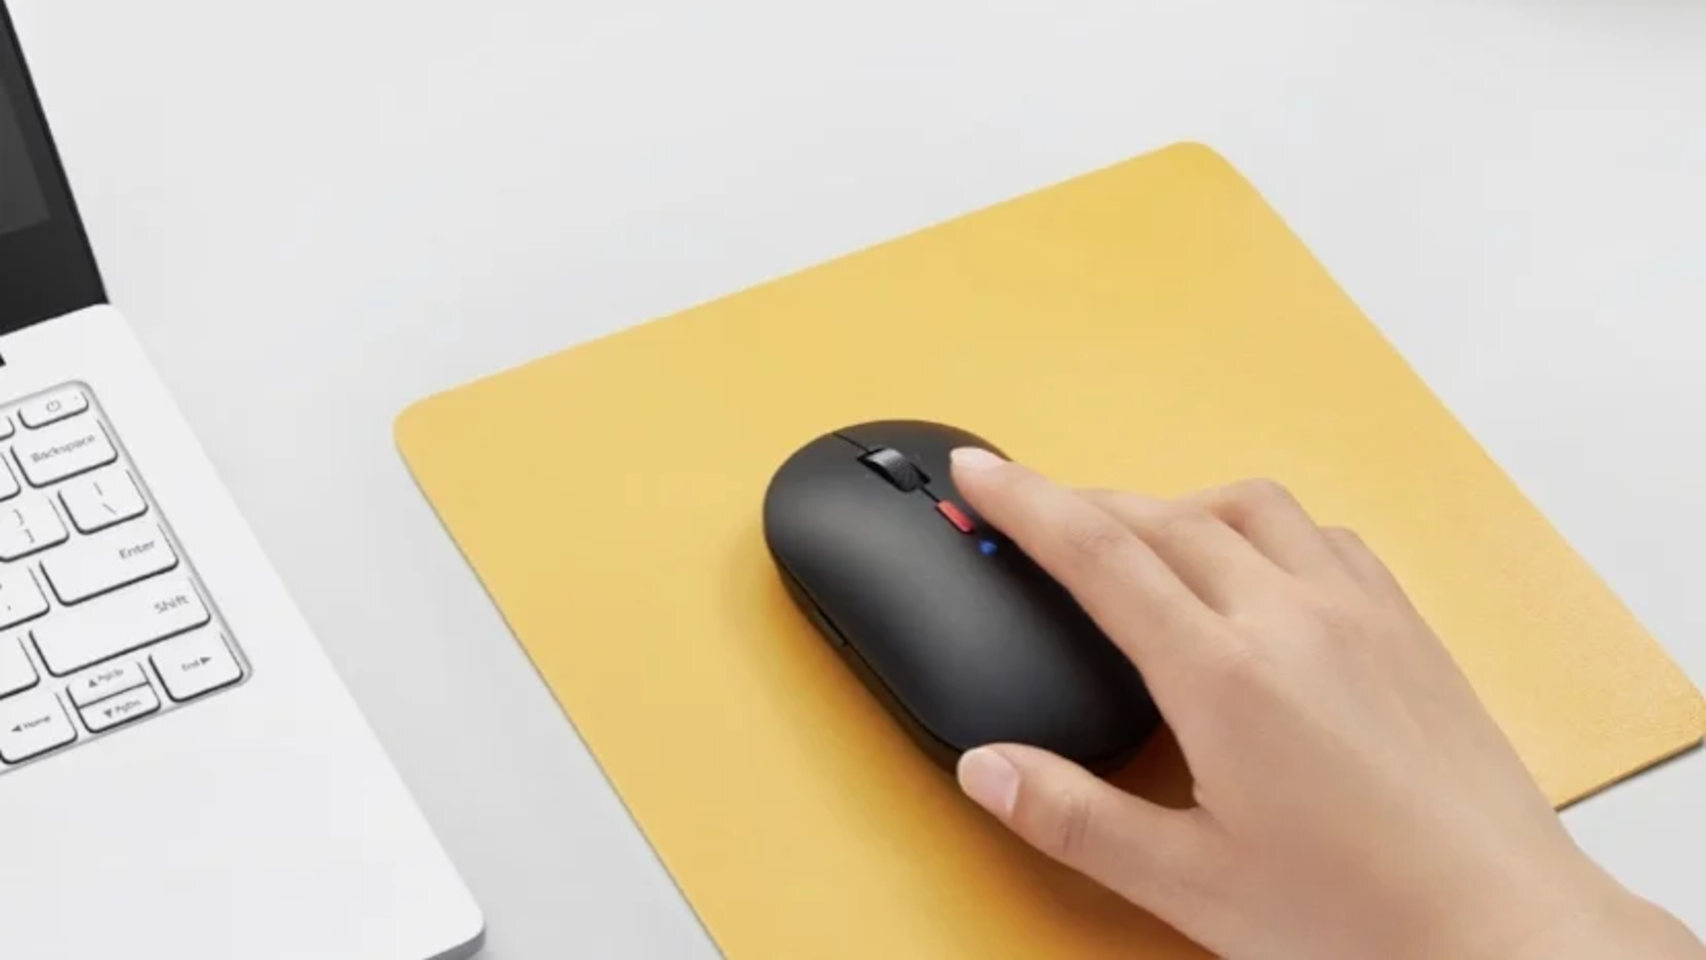 El nuevo ratón de Xiaomi integra un micrófono oculto